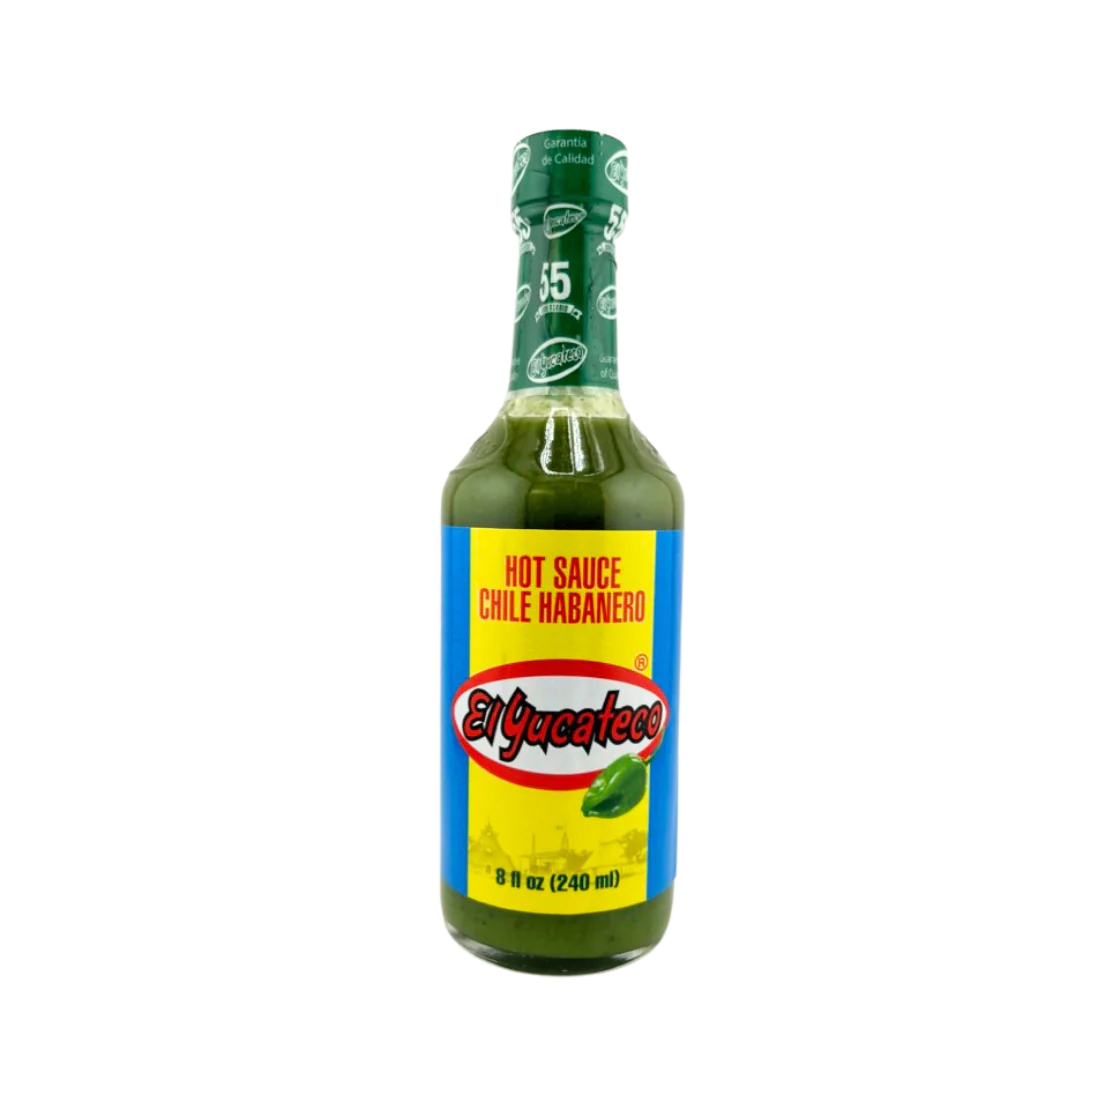 El Yucateco Green Hot Sauce (Salsa Picante Verde de Chile Habanero) 8 oz. 